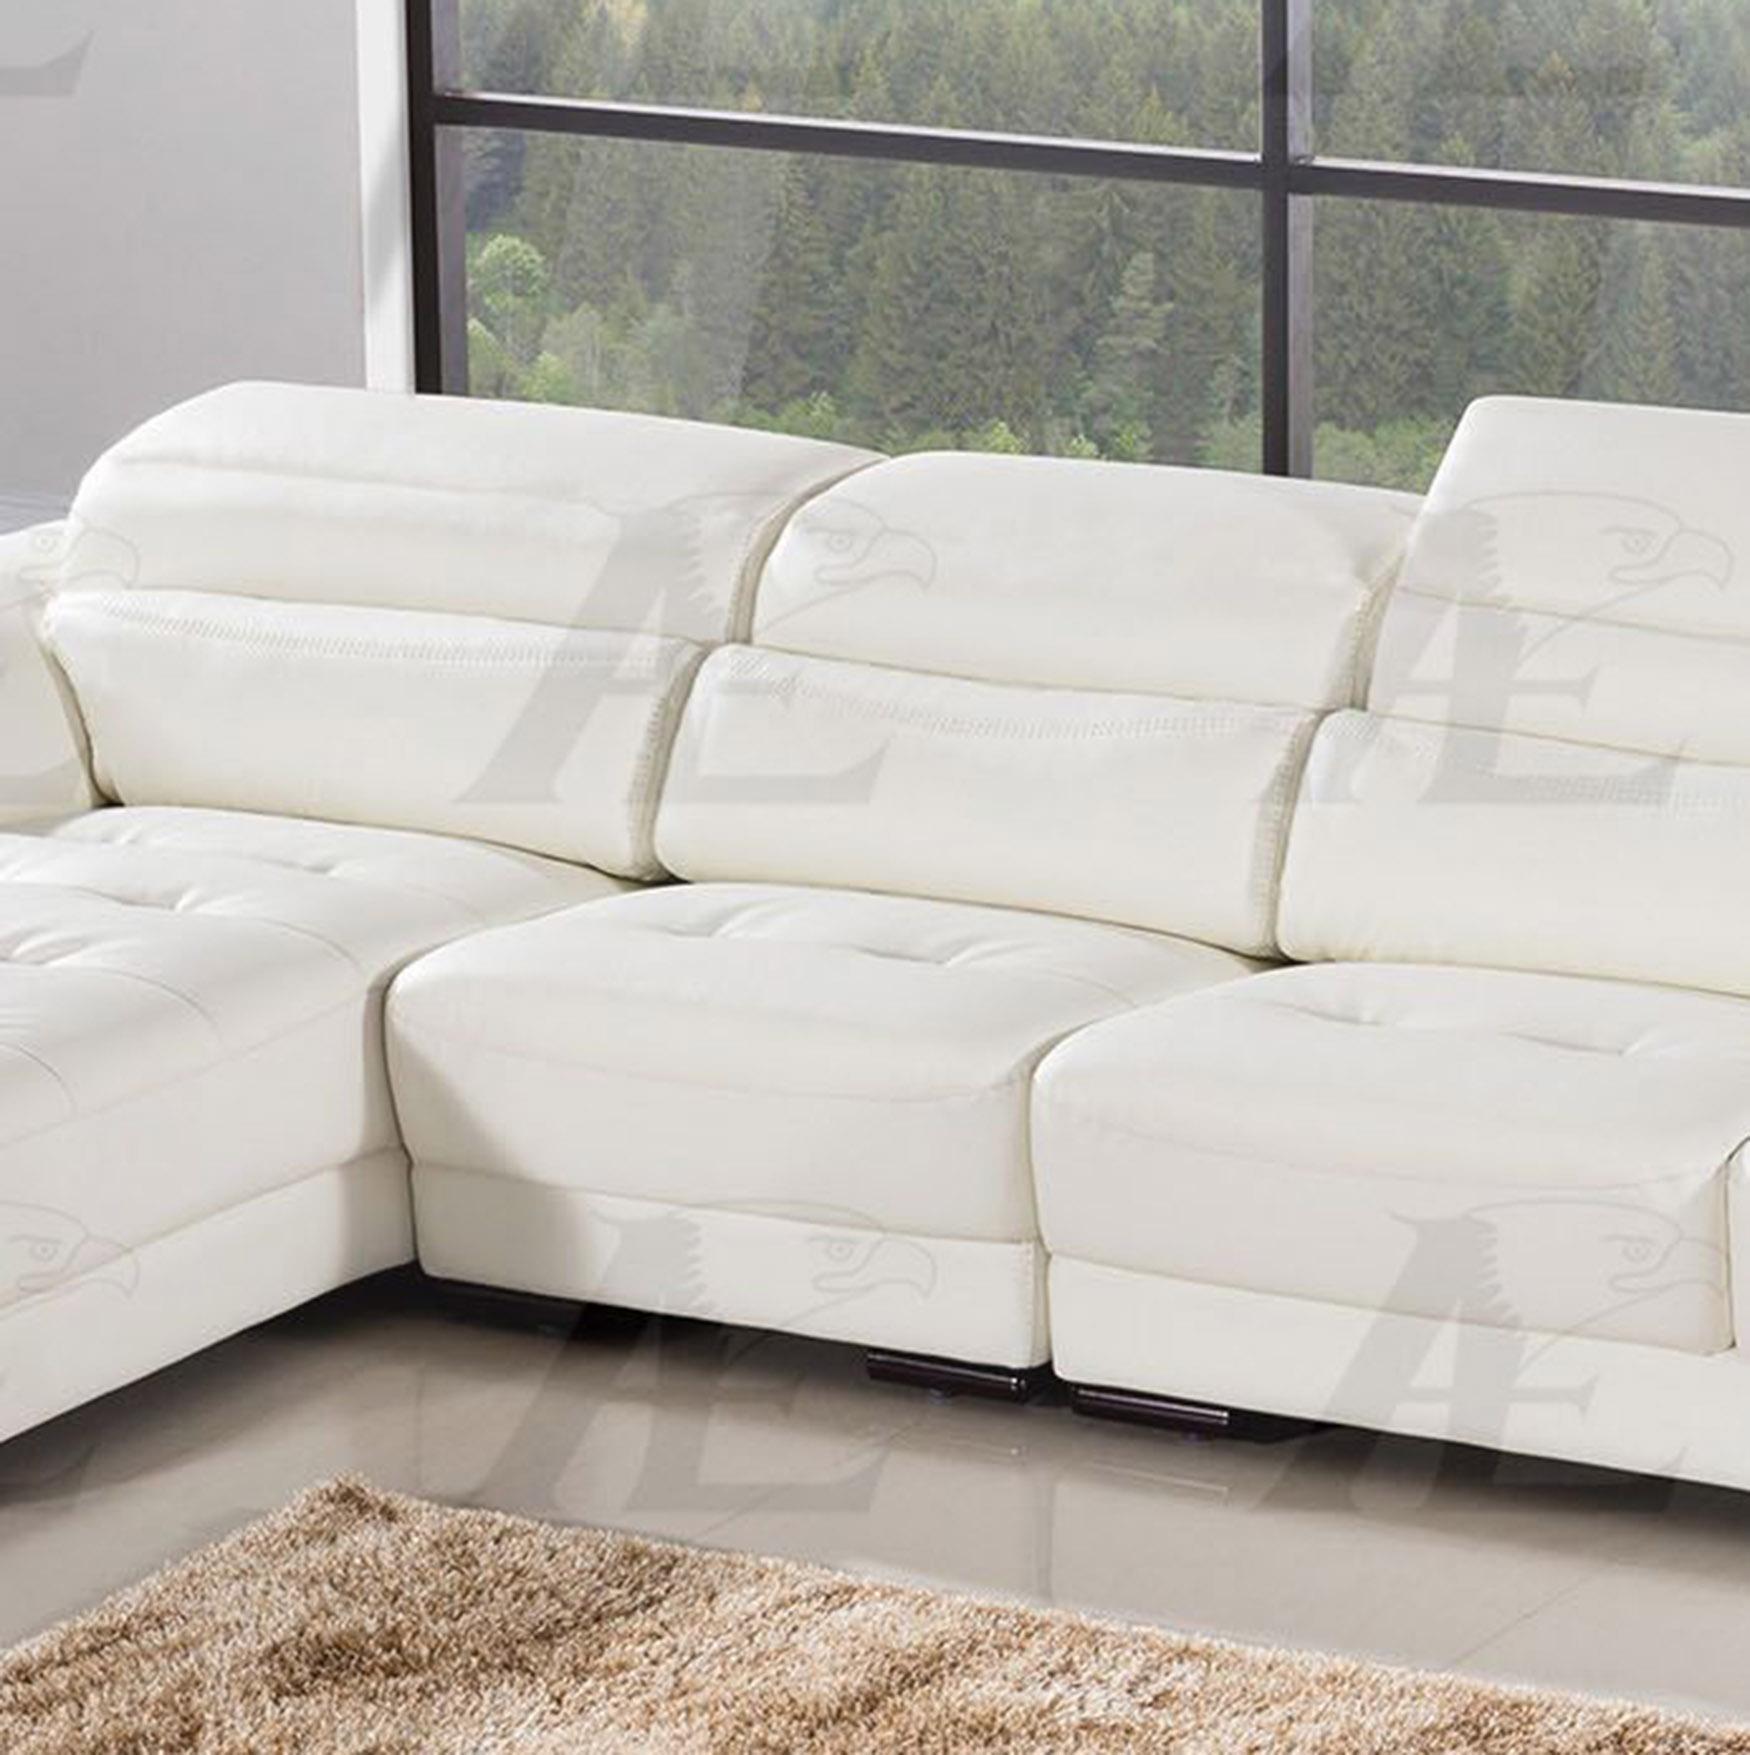 

    
American Eagle Furniture EK-LB309-W Sectional Sofa White EK-LB309-W Set-3 LHC
